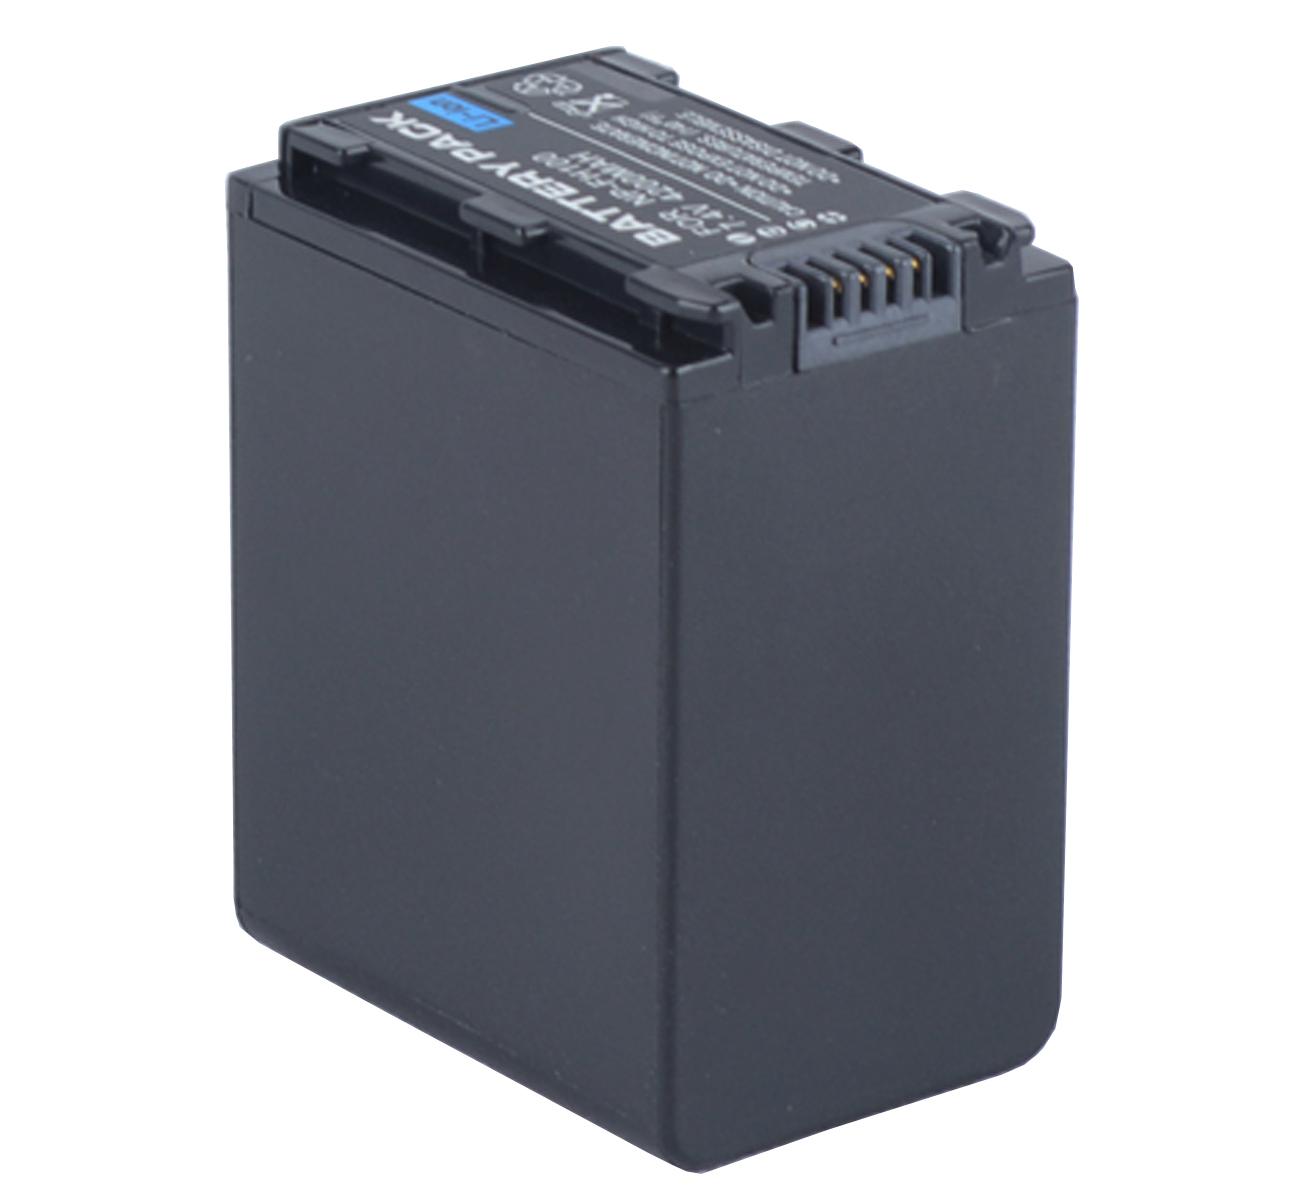 Изображение товара: Батарейный блок для видеокамеры sony DCR-SR72E, DCR-SR75E, DCR-SR77E, DCR-SR82E, DCR-SR85E, DCR-SR87E Handycam